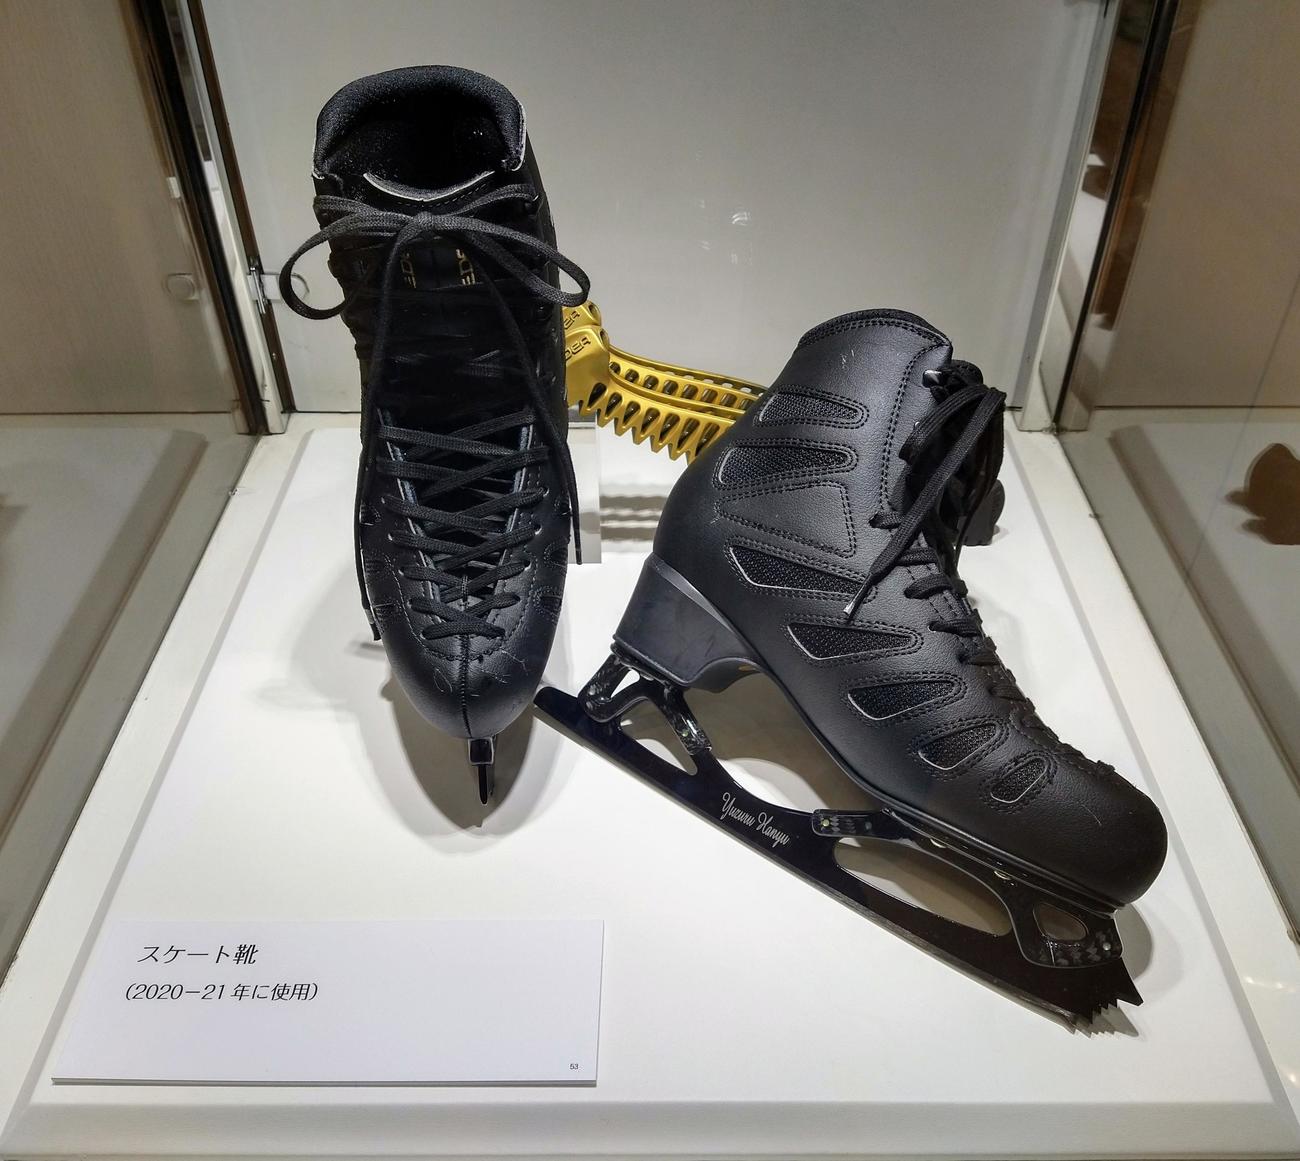 「羽生結弦展2022」で展示されている20－21年シーズンのスケート靴